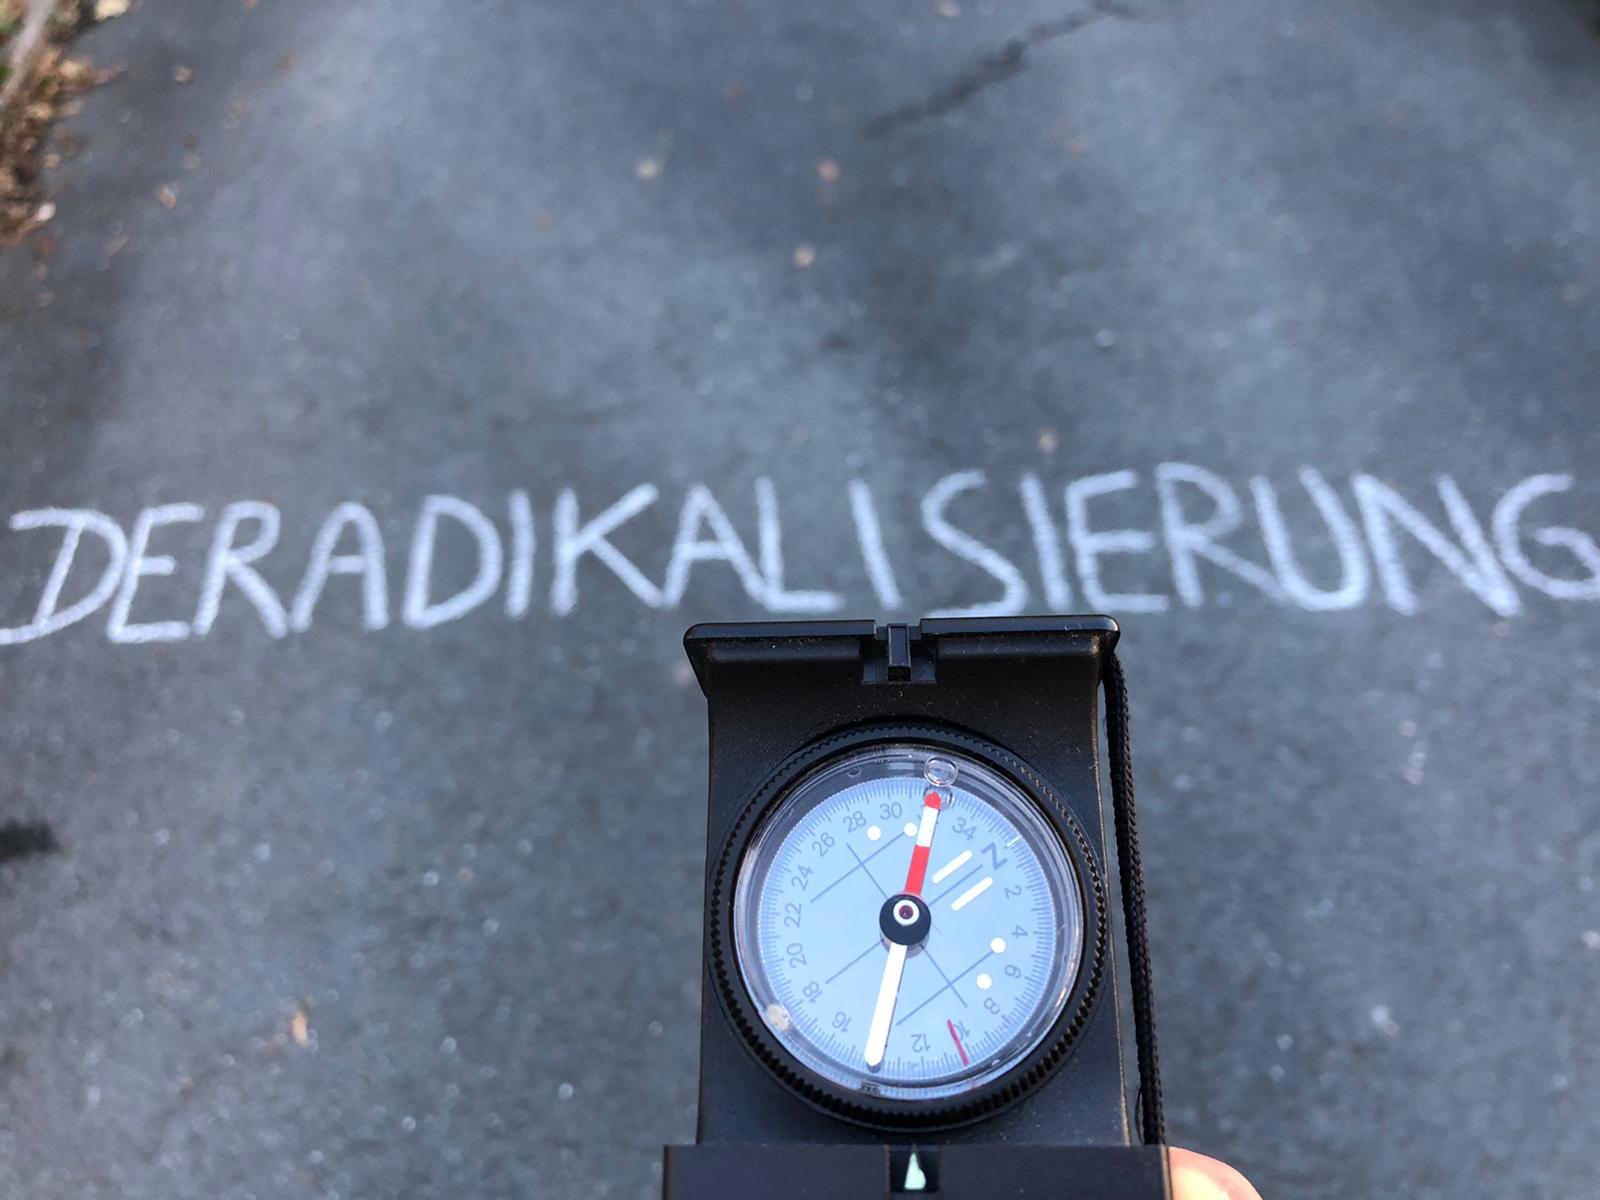 Ein Kompass zeigt mit der roten Nadel in Richtung des Schriftzuges "Deradikalisierung"